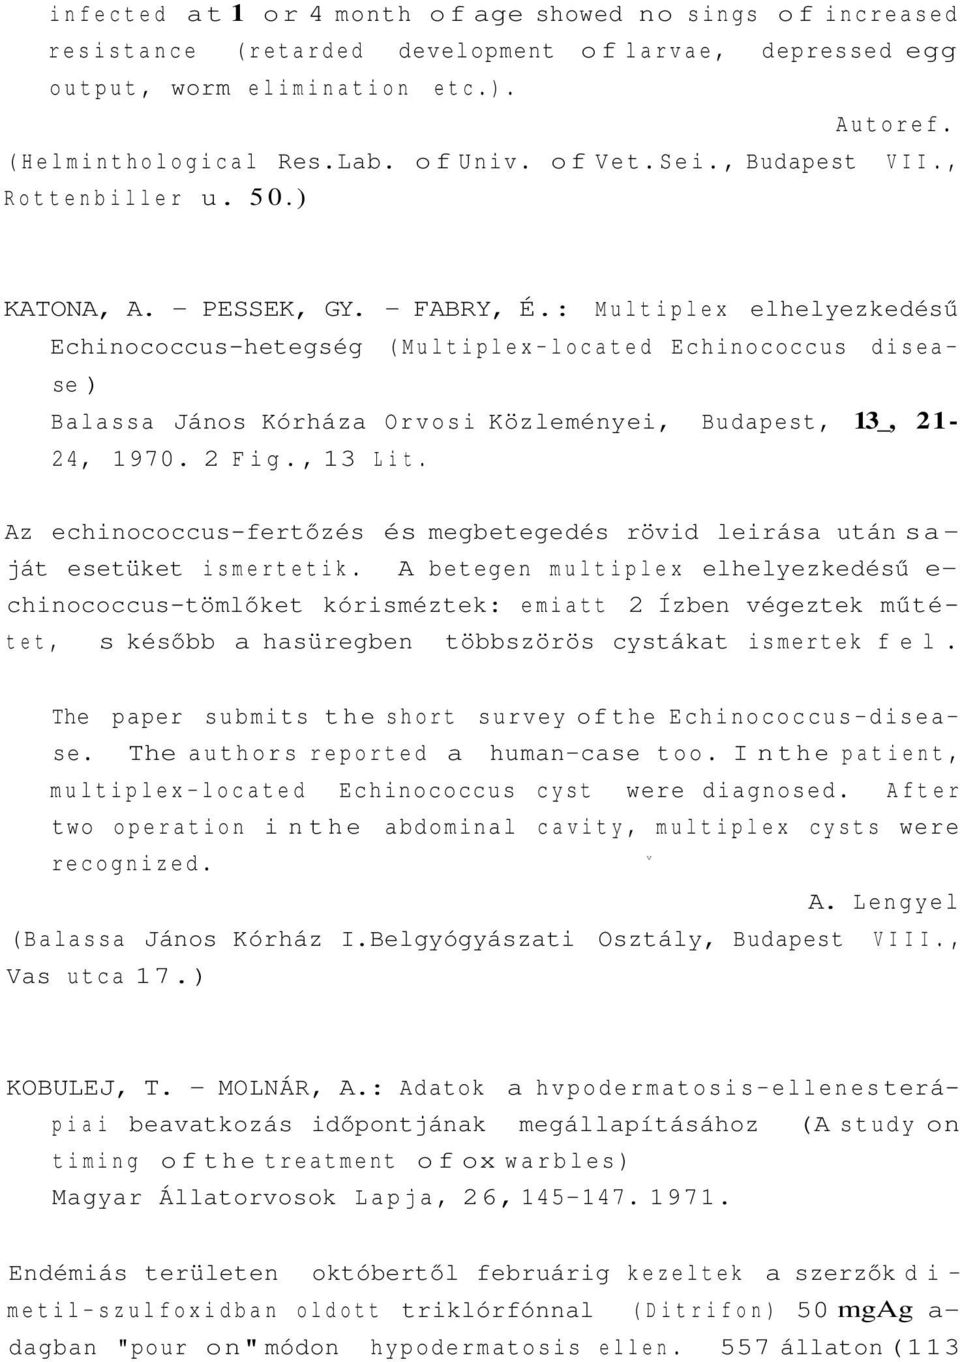 : Multiplex elhelyezkedésű Echinococcus-hetegség (Multiplex-located Echinococcus disease ) Balassa János Kórháza Orvosi Közleményei, Budapest, 13_, 21-24, 1970. 2 Fig., 13 Lit.